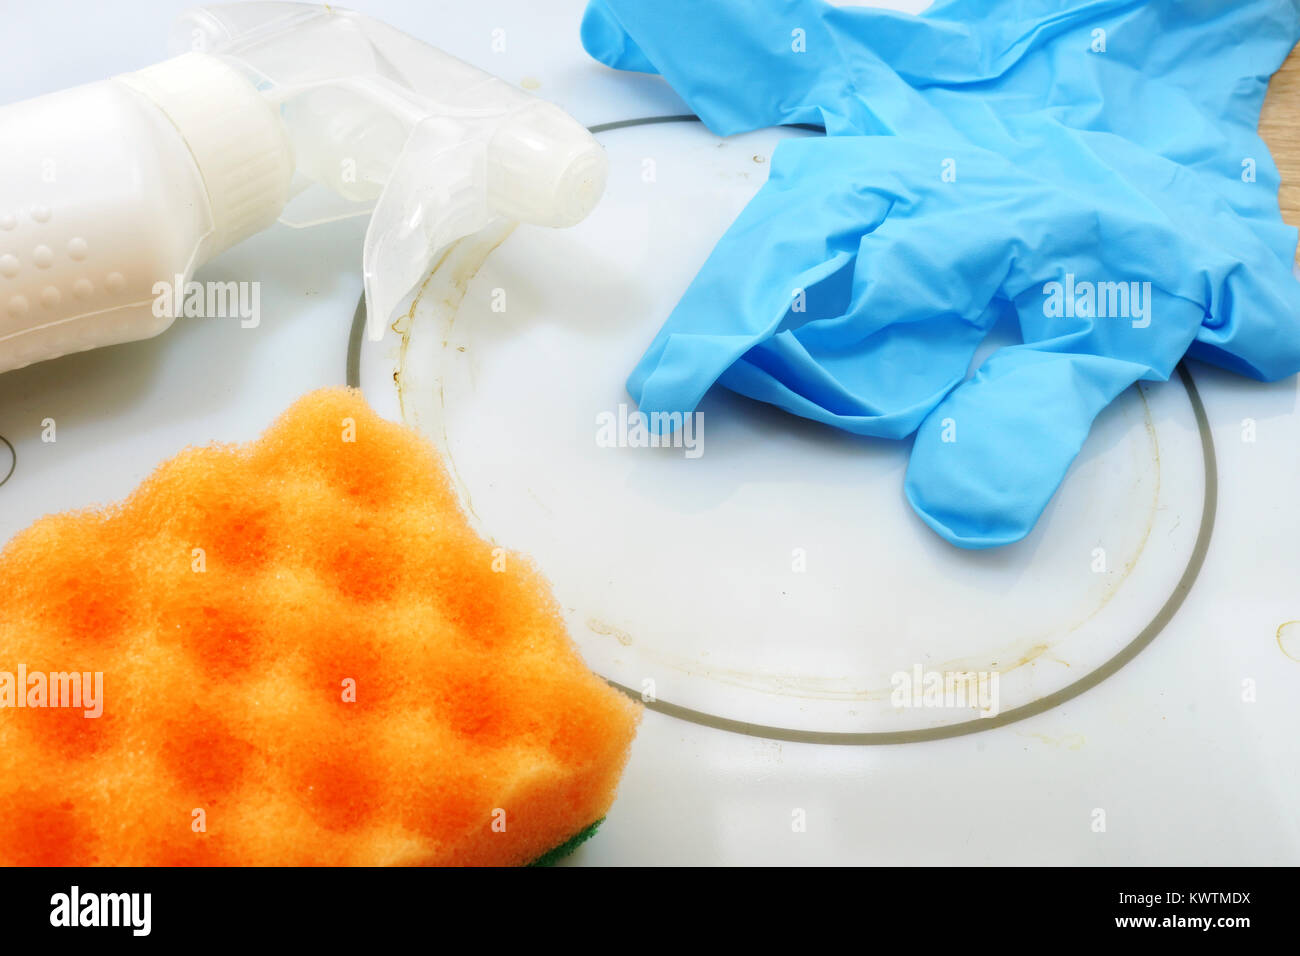 Limpieza sucia encimera eléctrica. Cerca de guante azul, el polvo y la esponja en la estufa blanca. Foto de stock